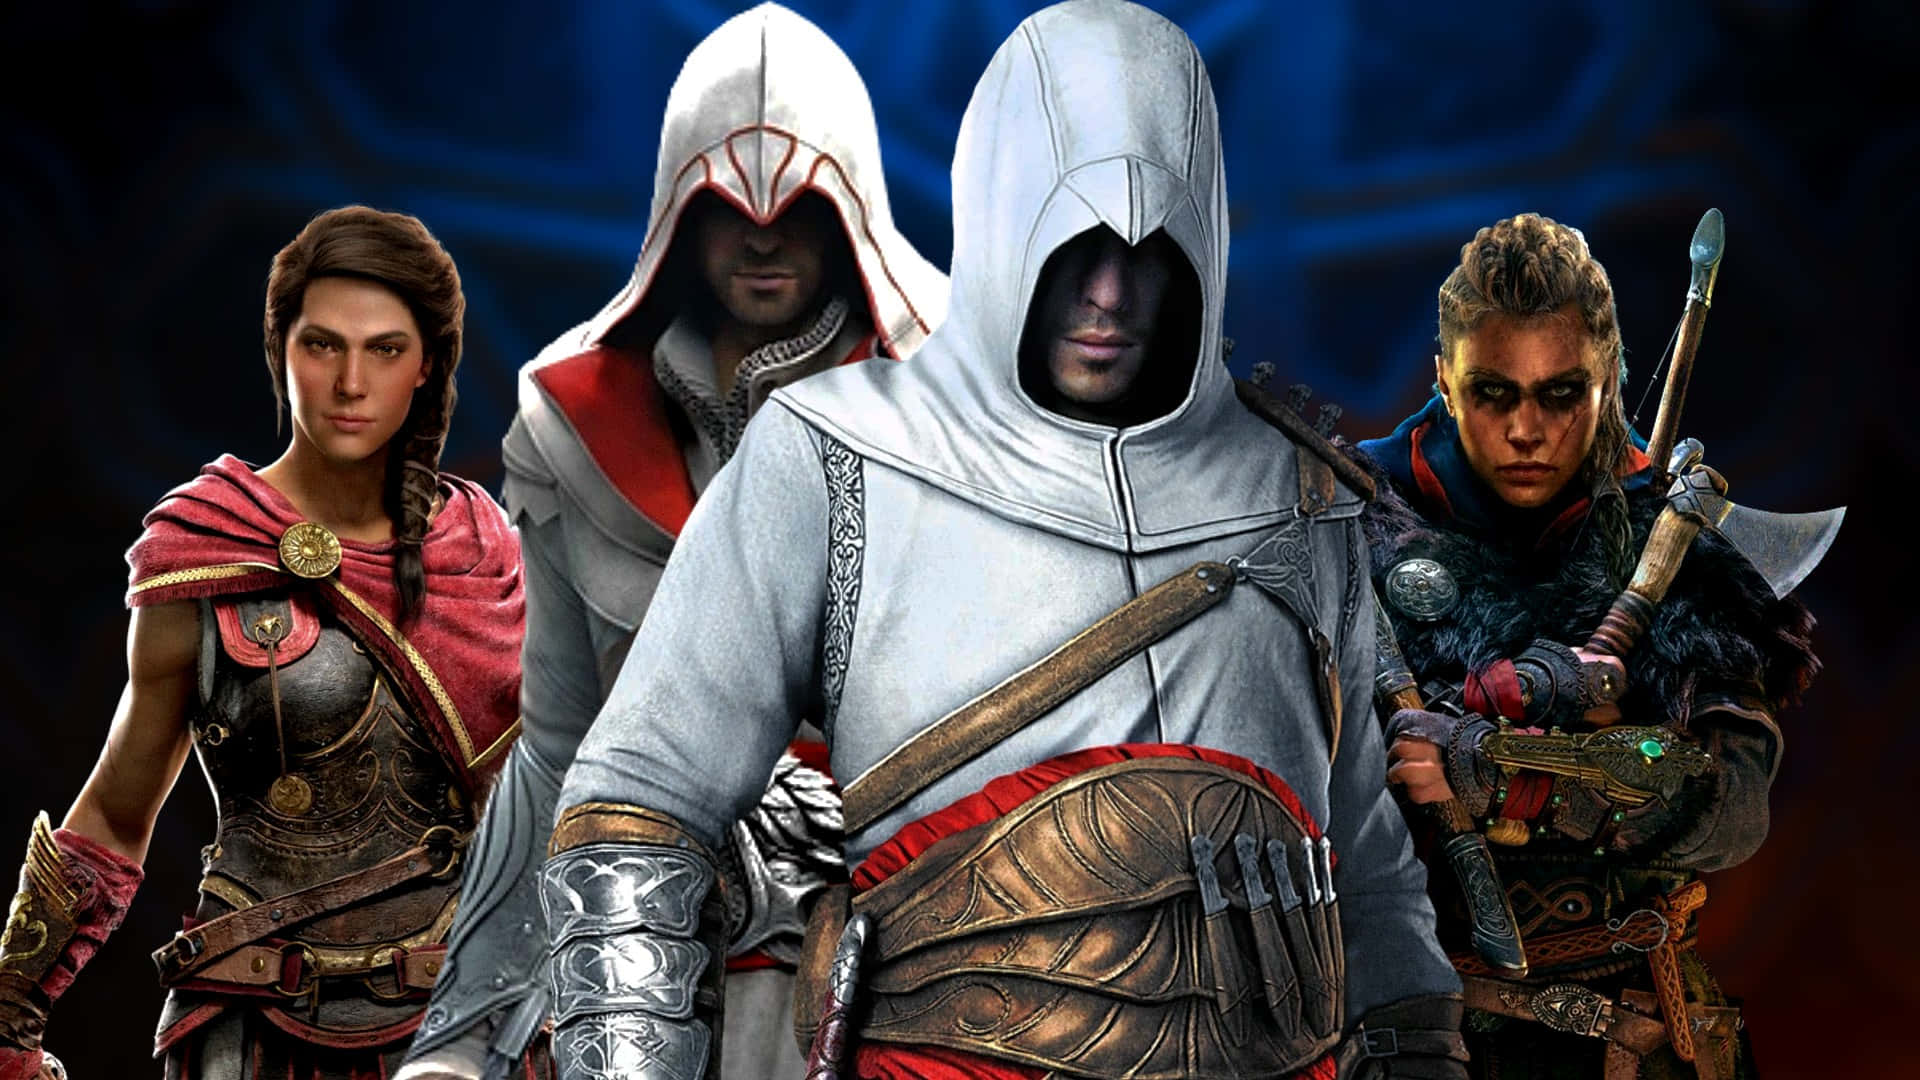 Resagenom Det Antika Egypten I Assassin's Creed Origins.